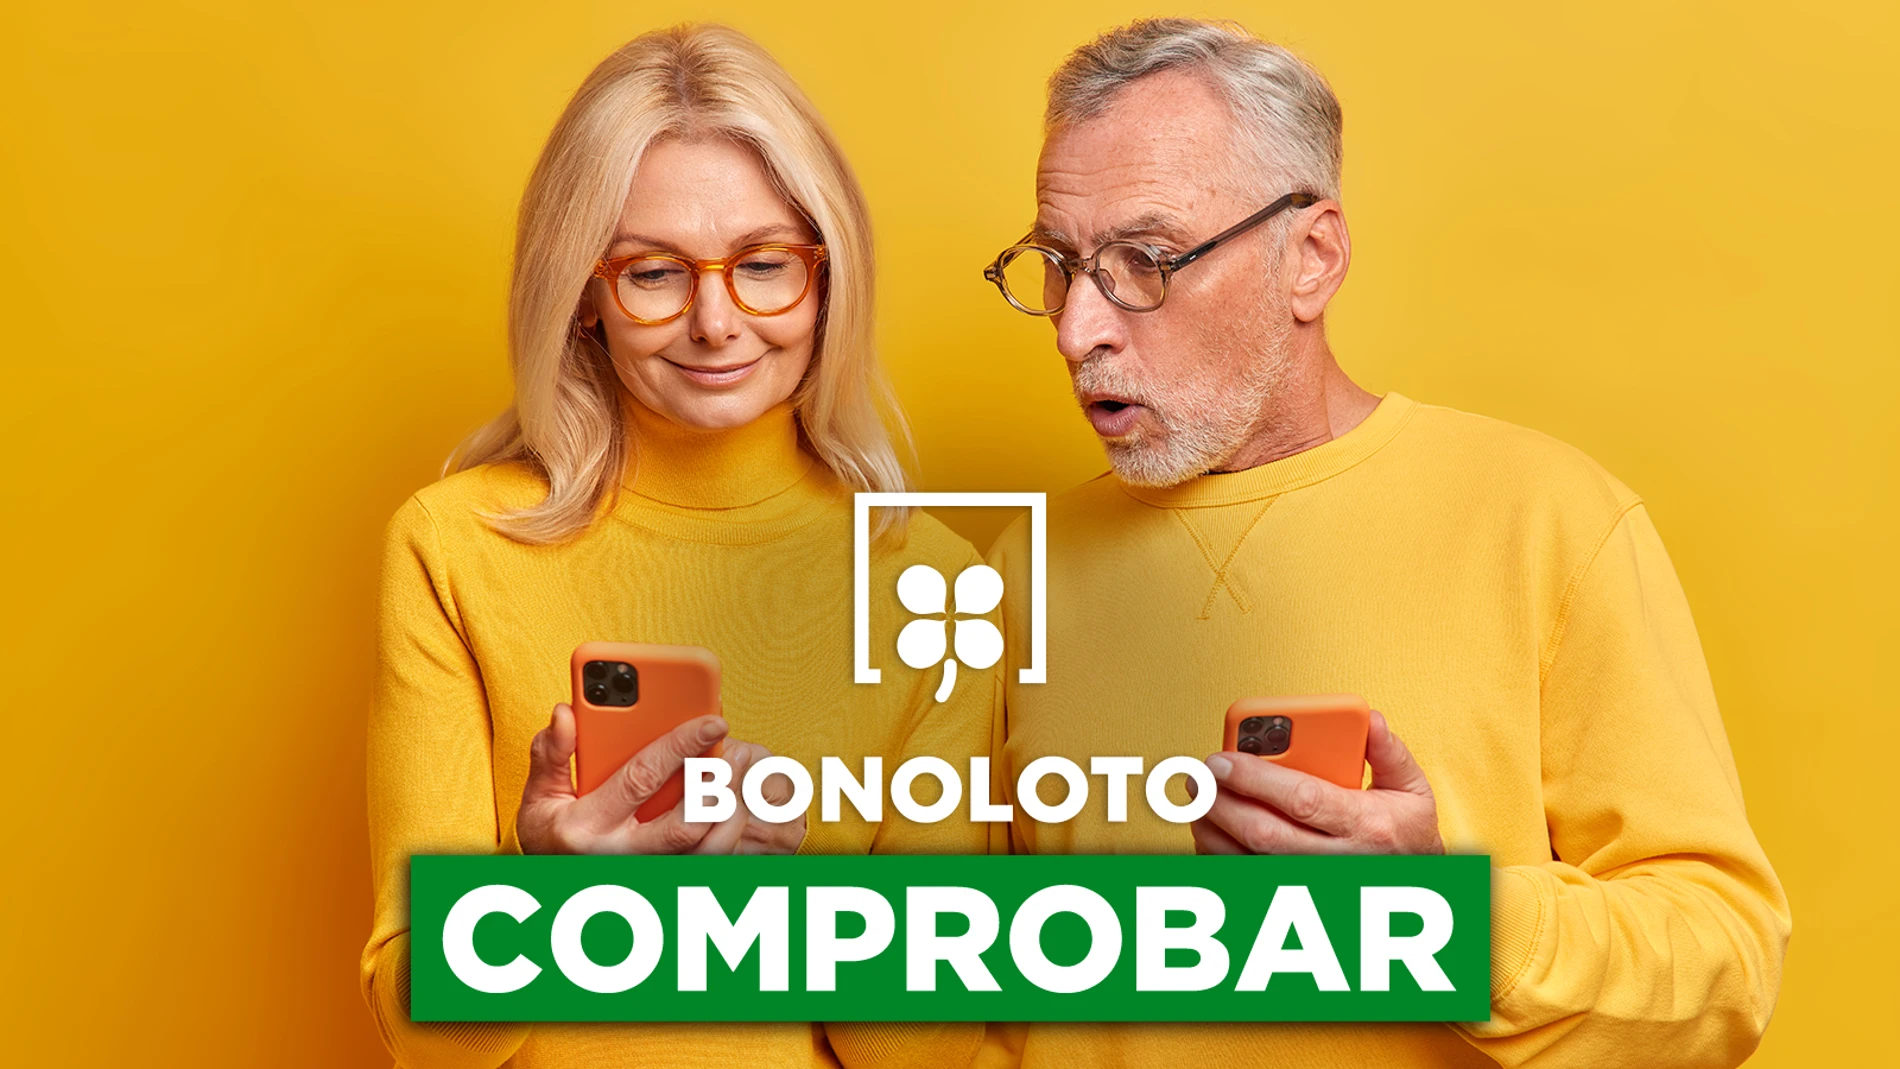 Bonoloto: comprobar hoy, viernes 14 de octubre de 2022